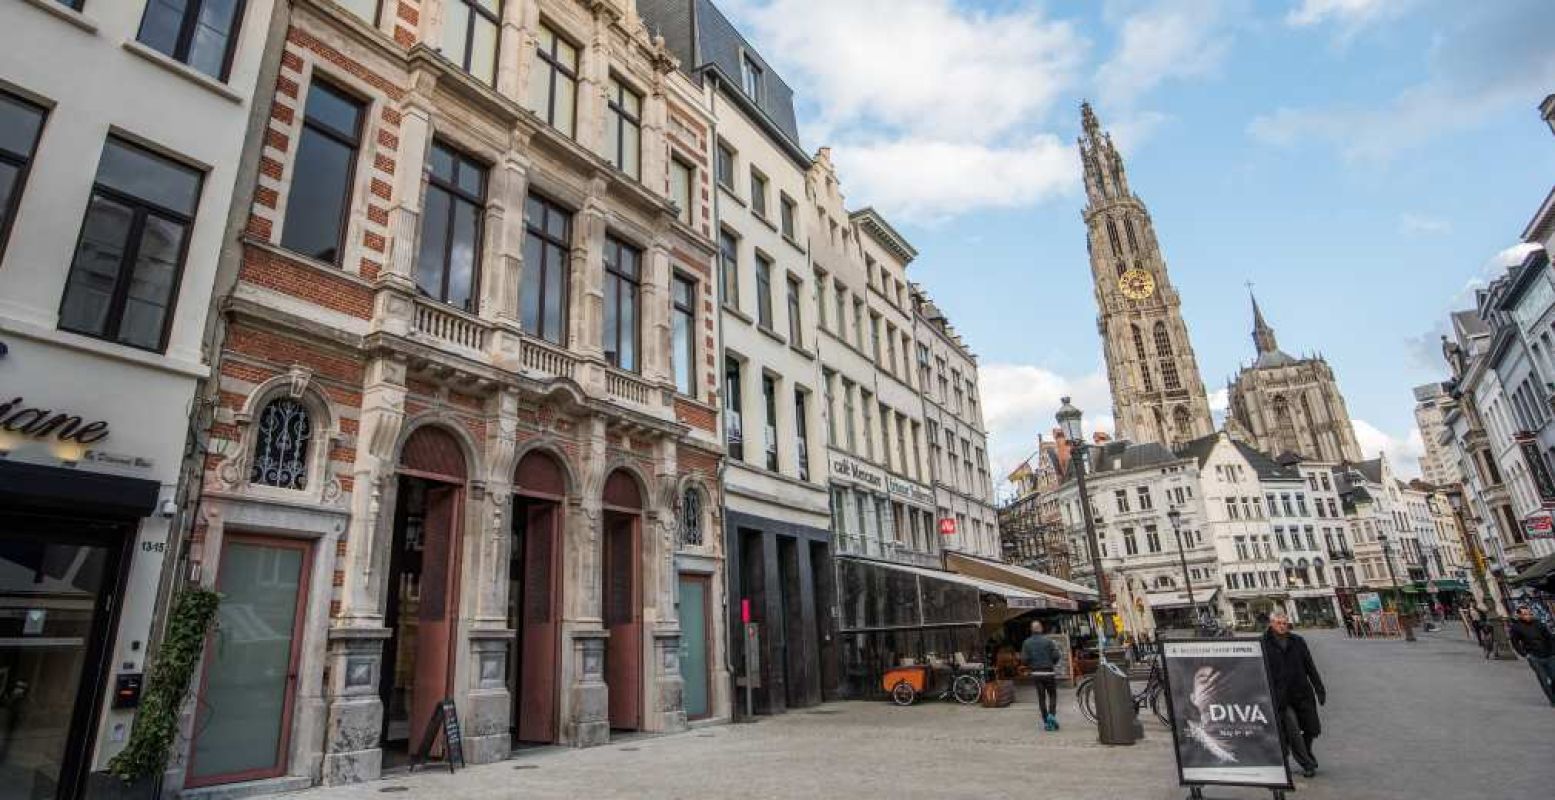 Het vernieuwde DIVA aan de Suikerrui in Antwerpen. Foto: DIVA